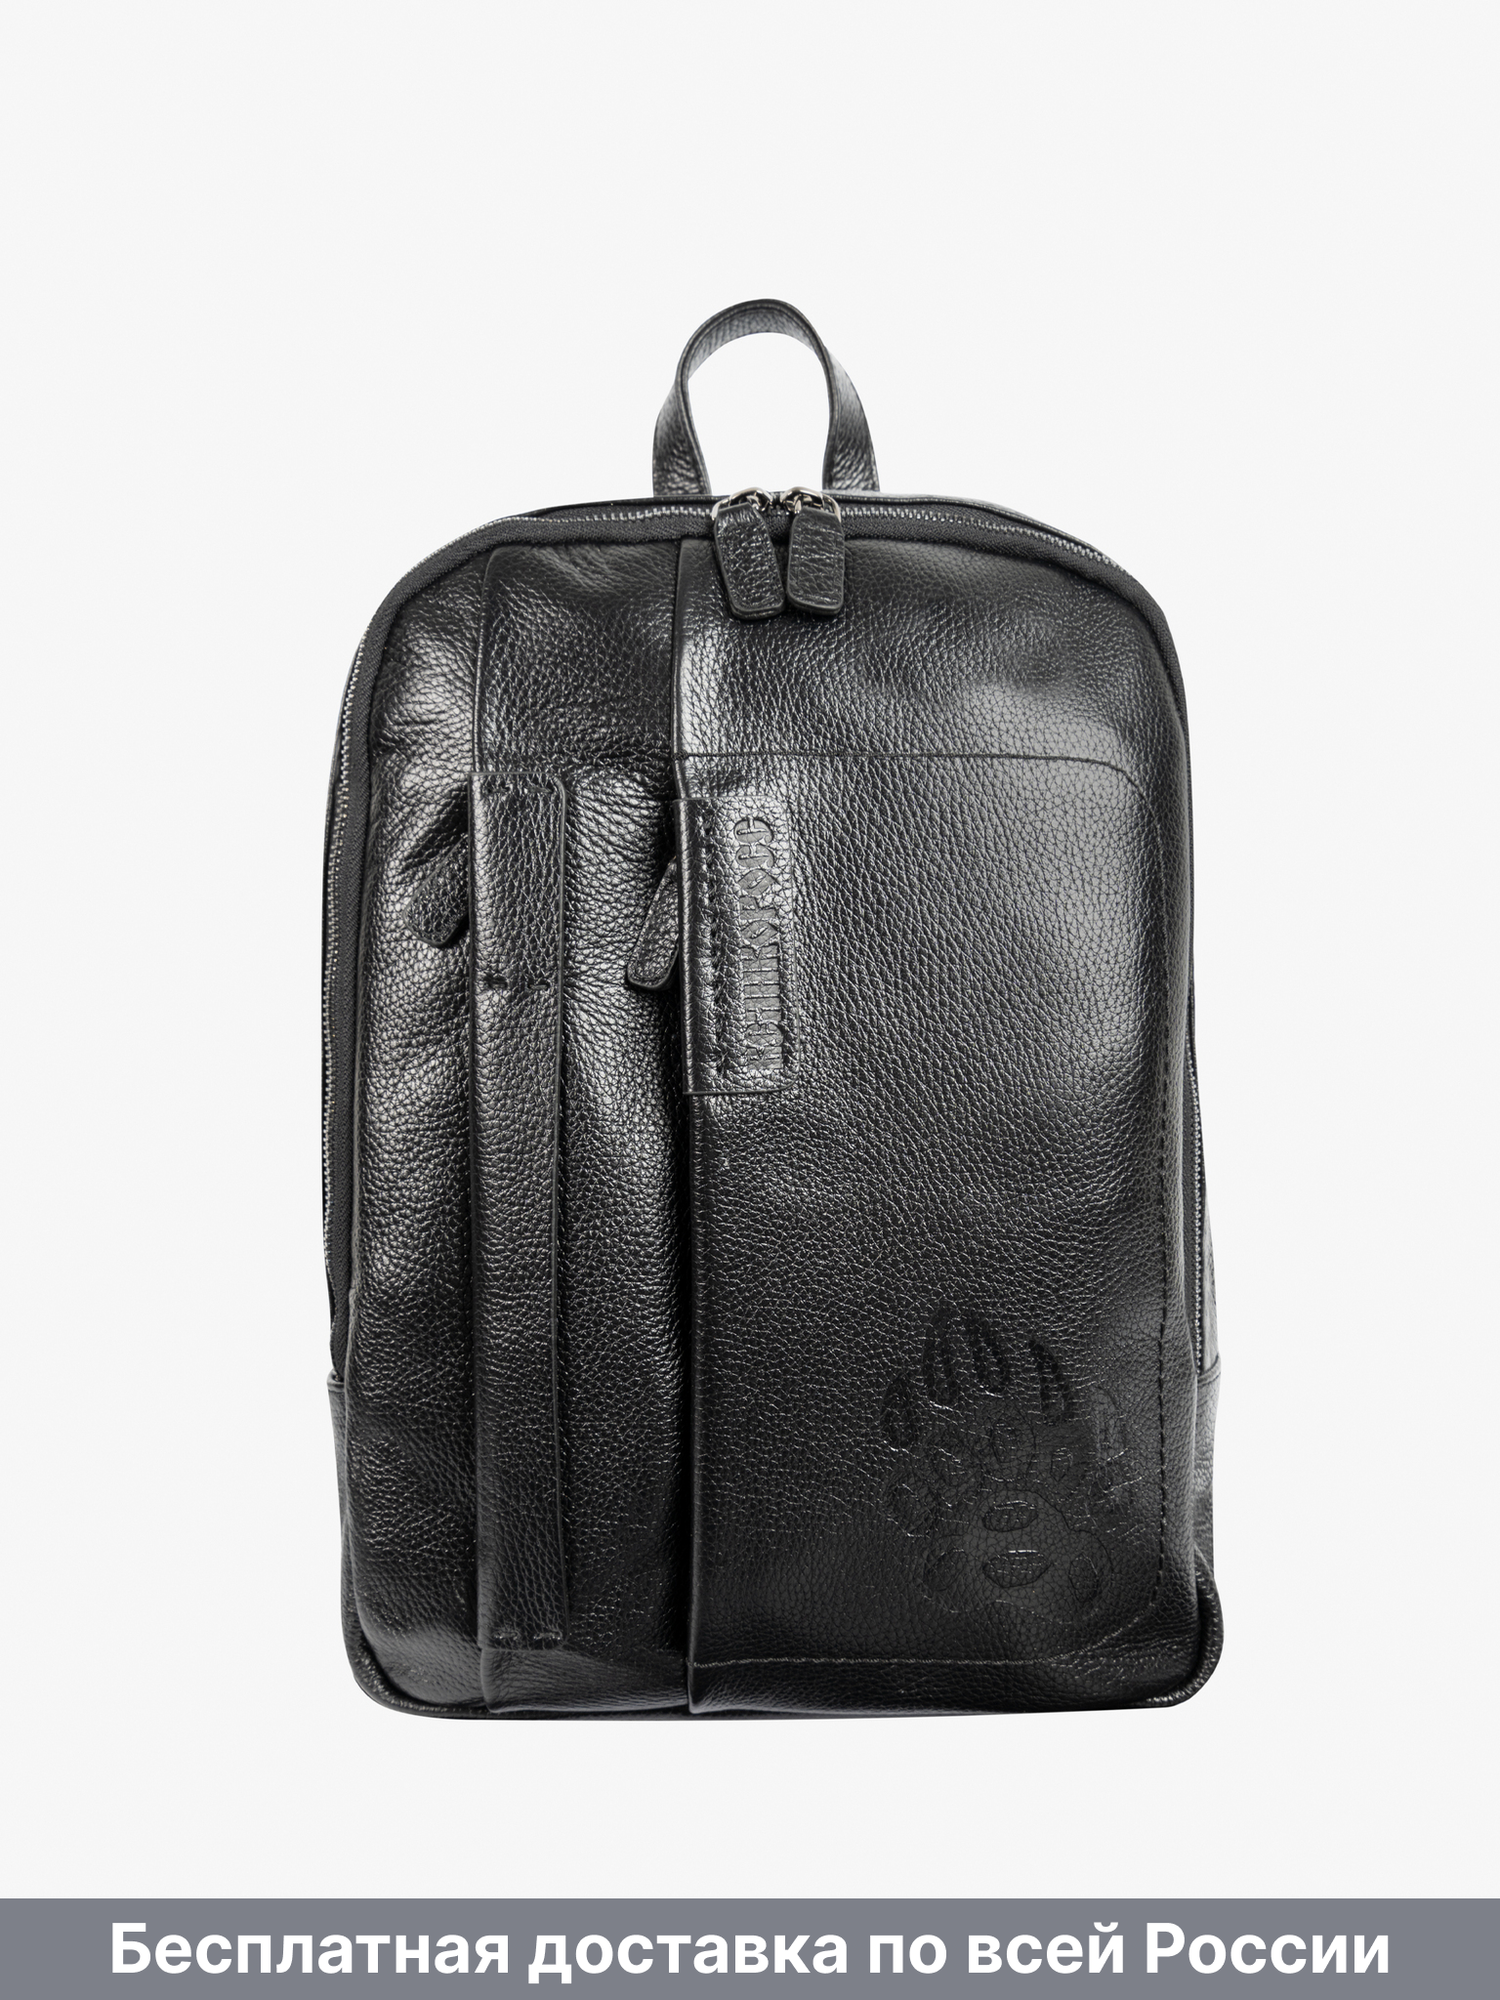 Кожаный рюкзак-компактный чёрного цвета